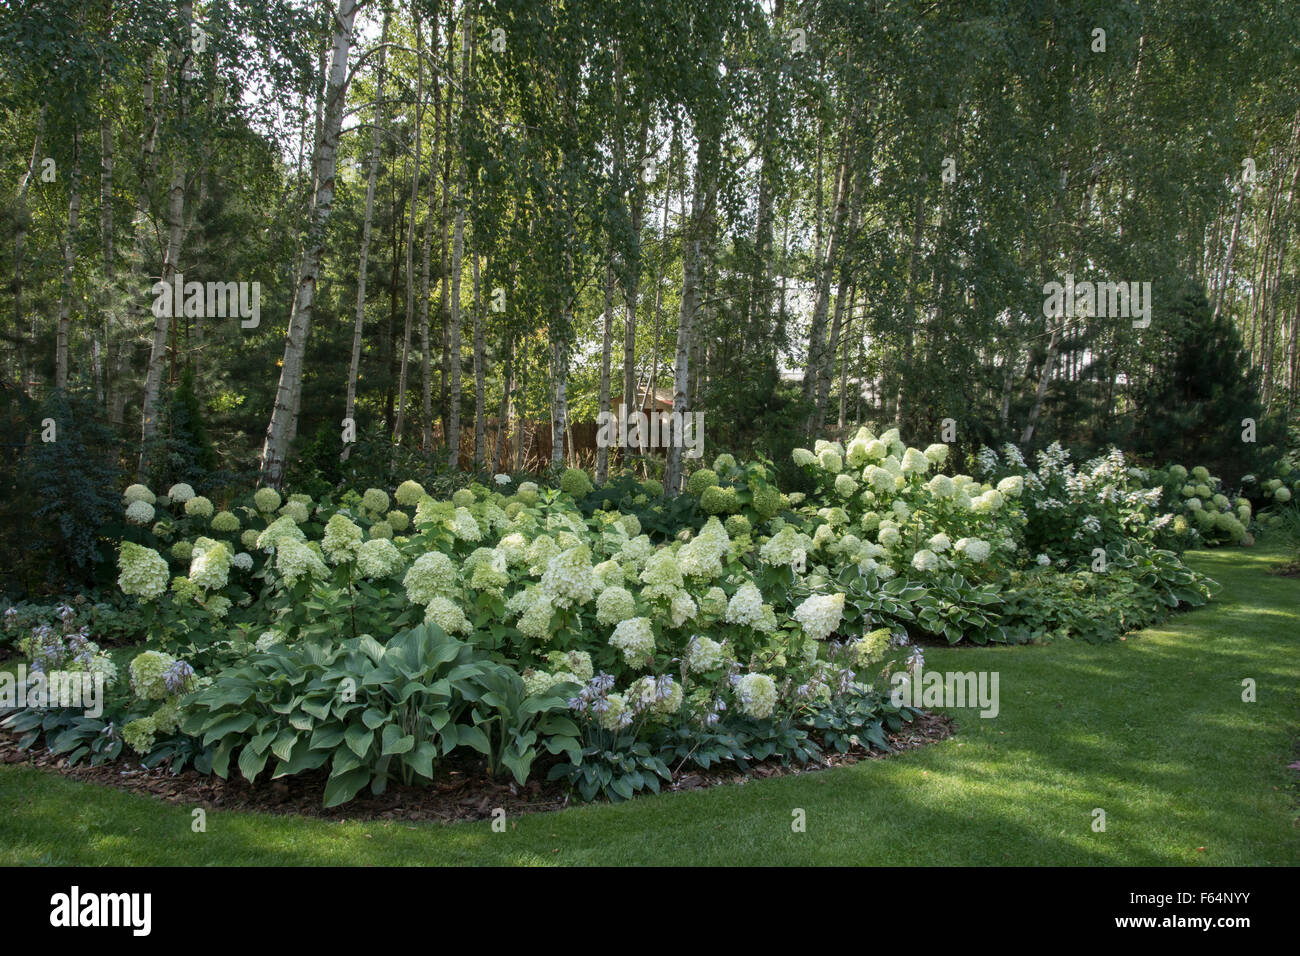 Wilcza Gora Garden in summer. Stock Photo